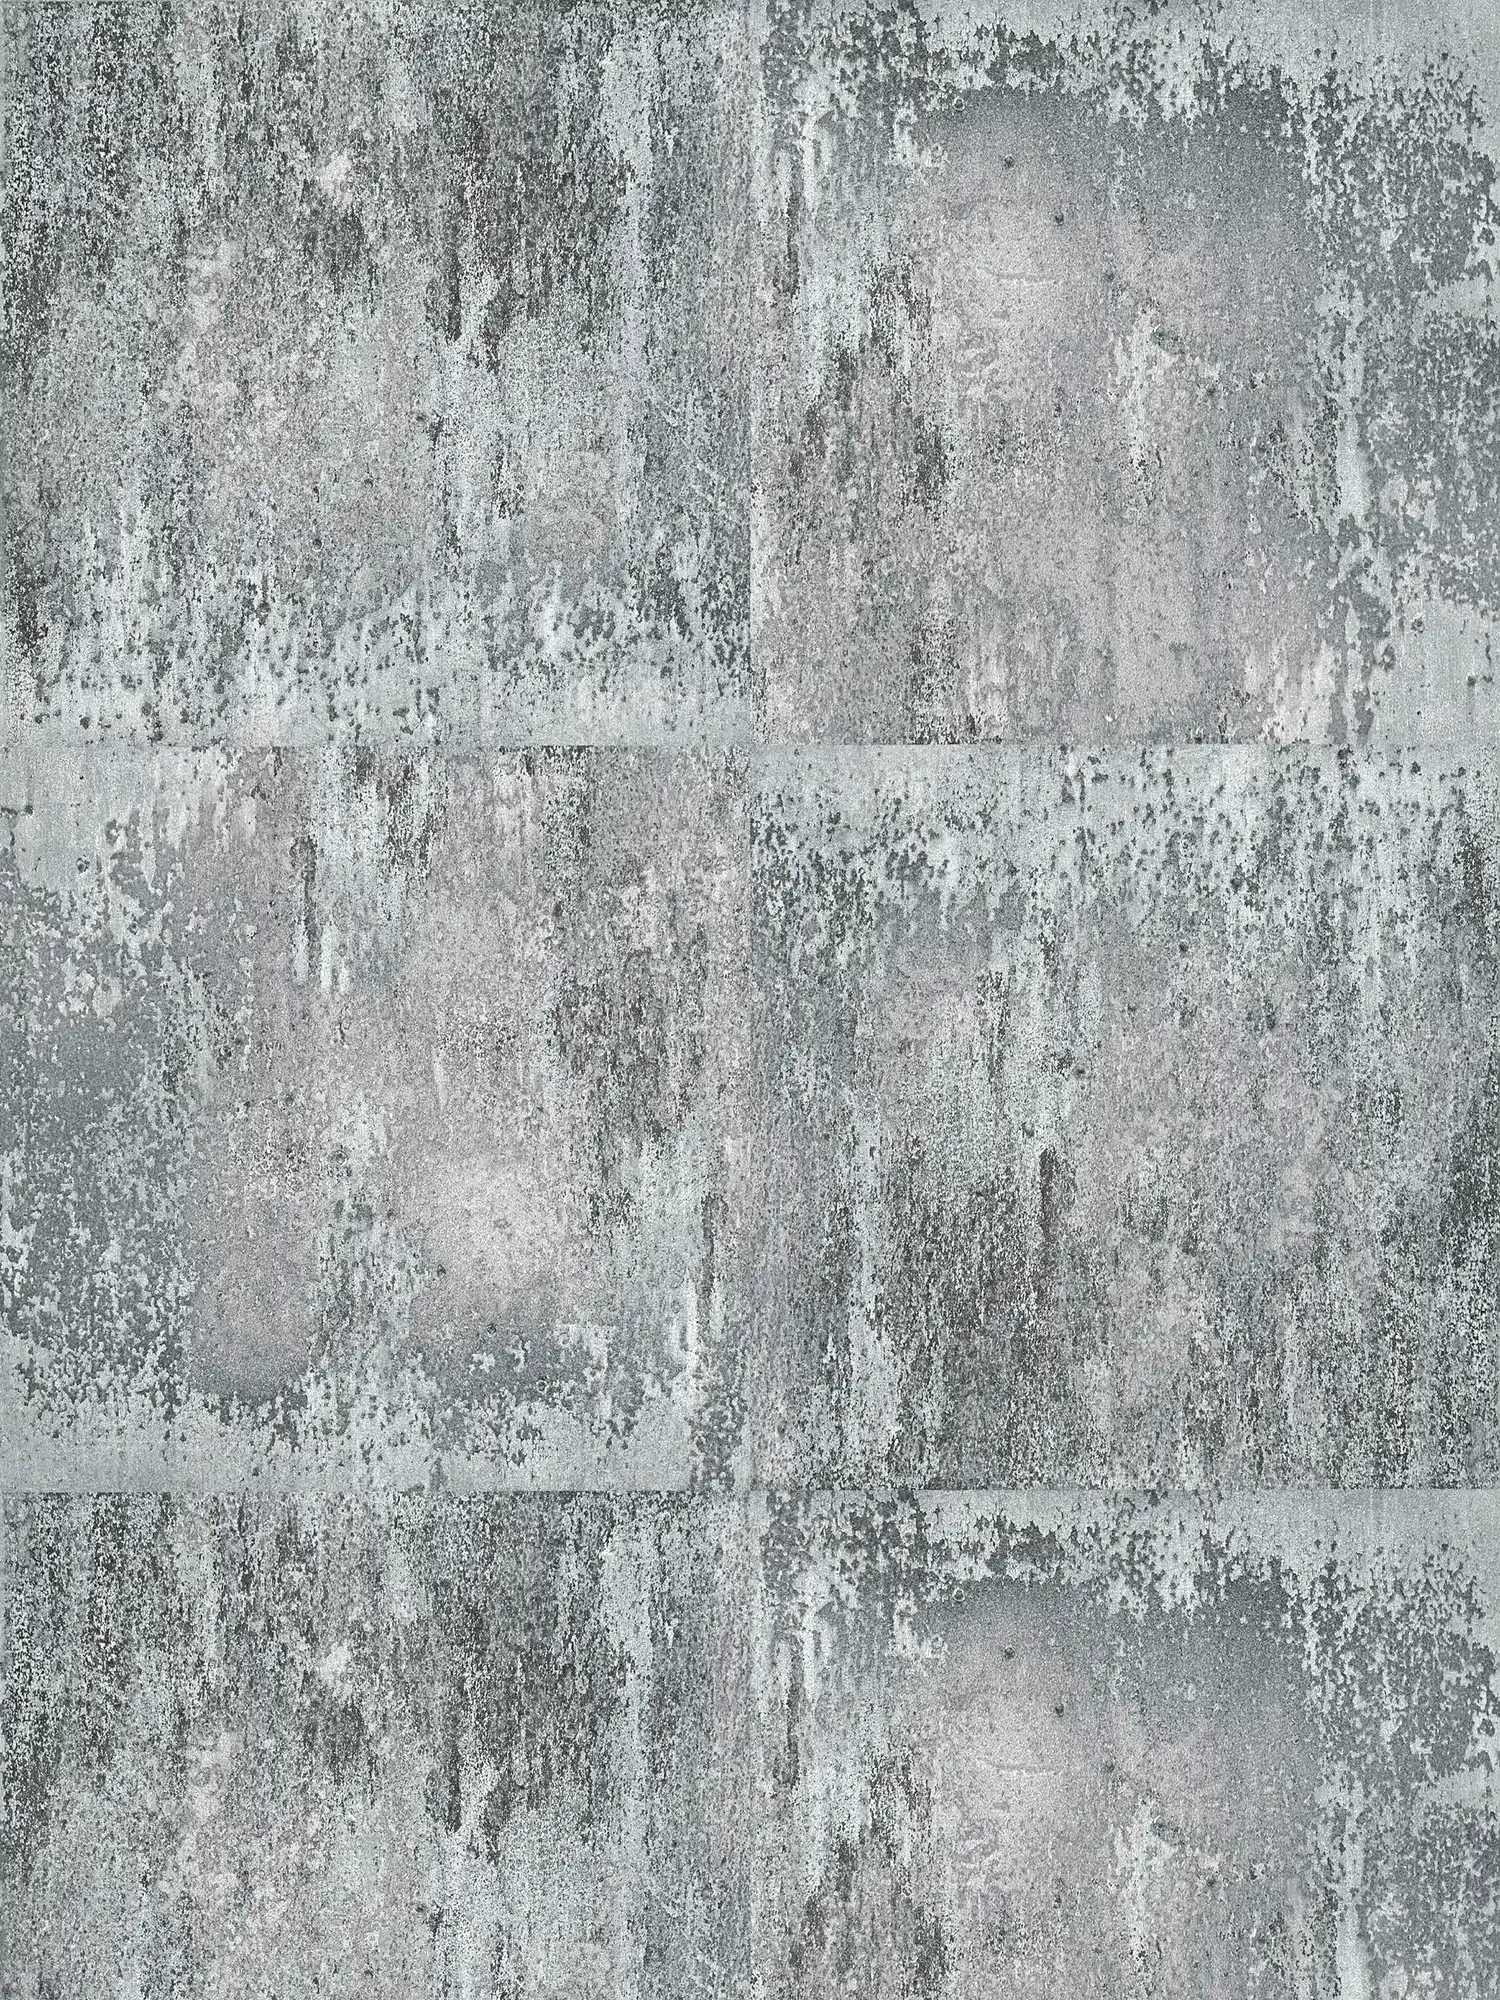         Papier peint aspect métal rustique & motif rugueux - gris, noir, argenté
    